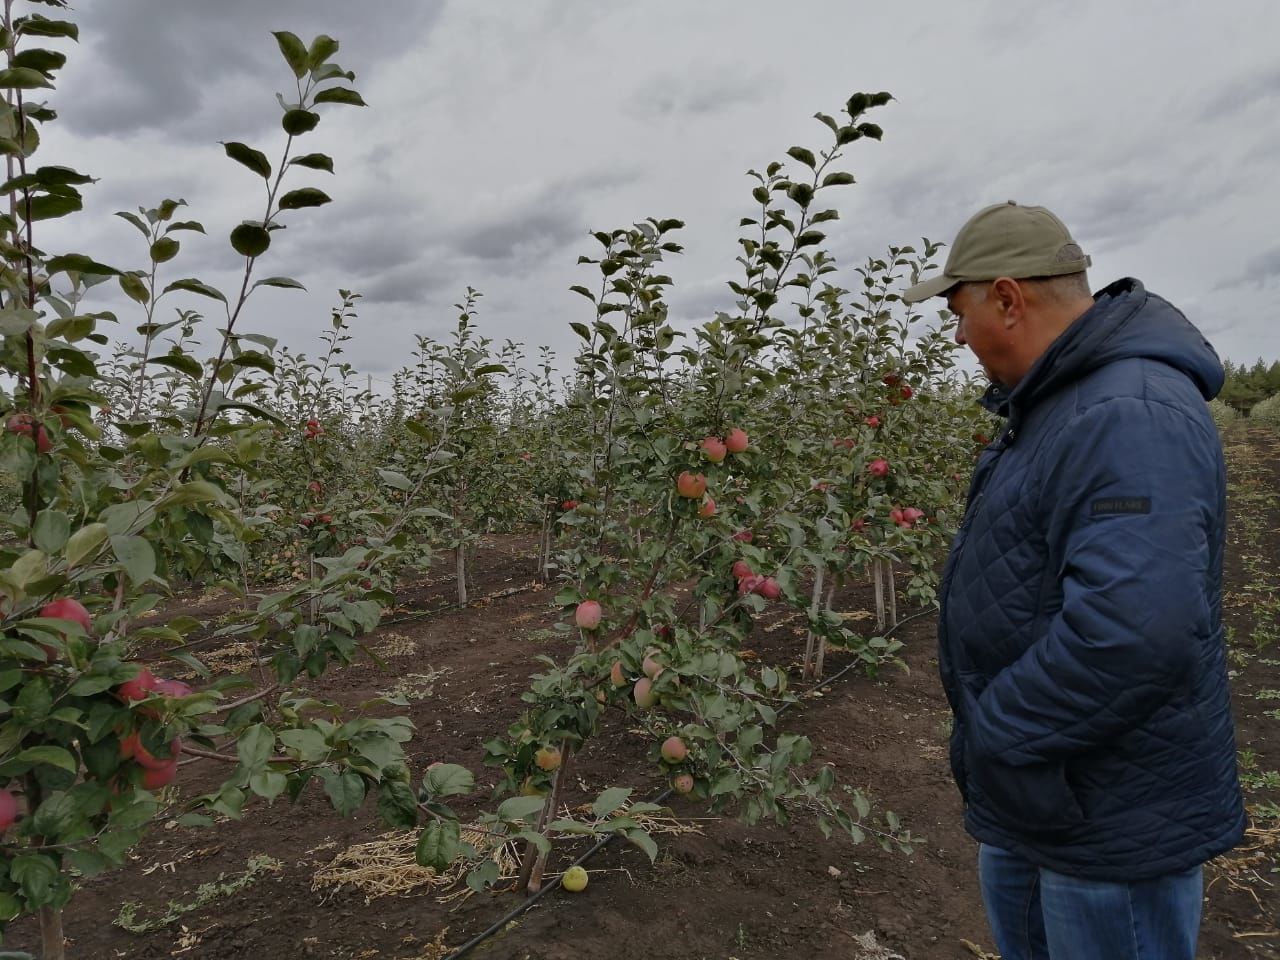 Фермер Зямиль Давлетшин: “Не верят, что на рынке будем продавать яблоки, выращенные в Буинске” (+ фото, видео)